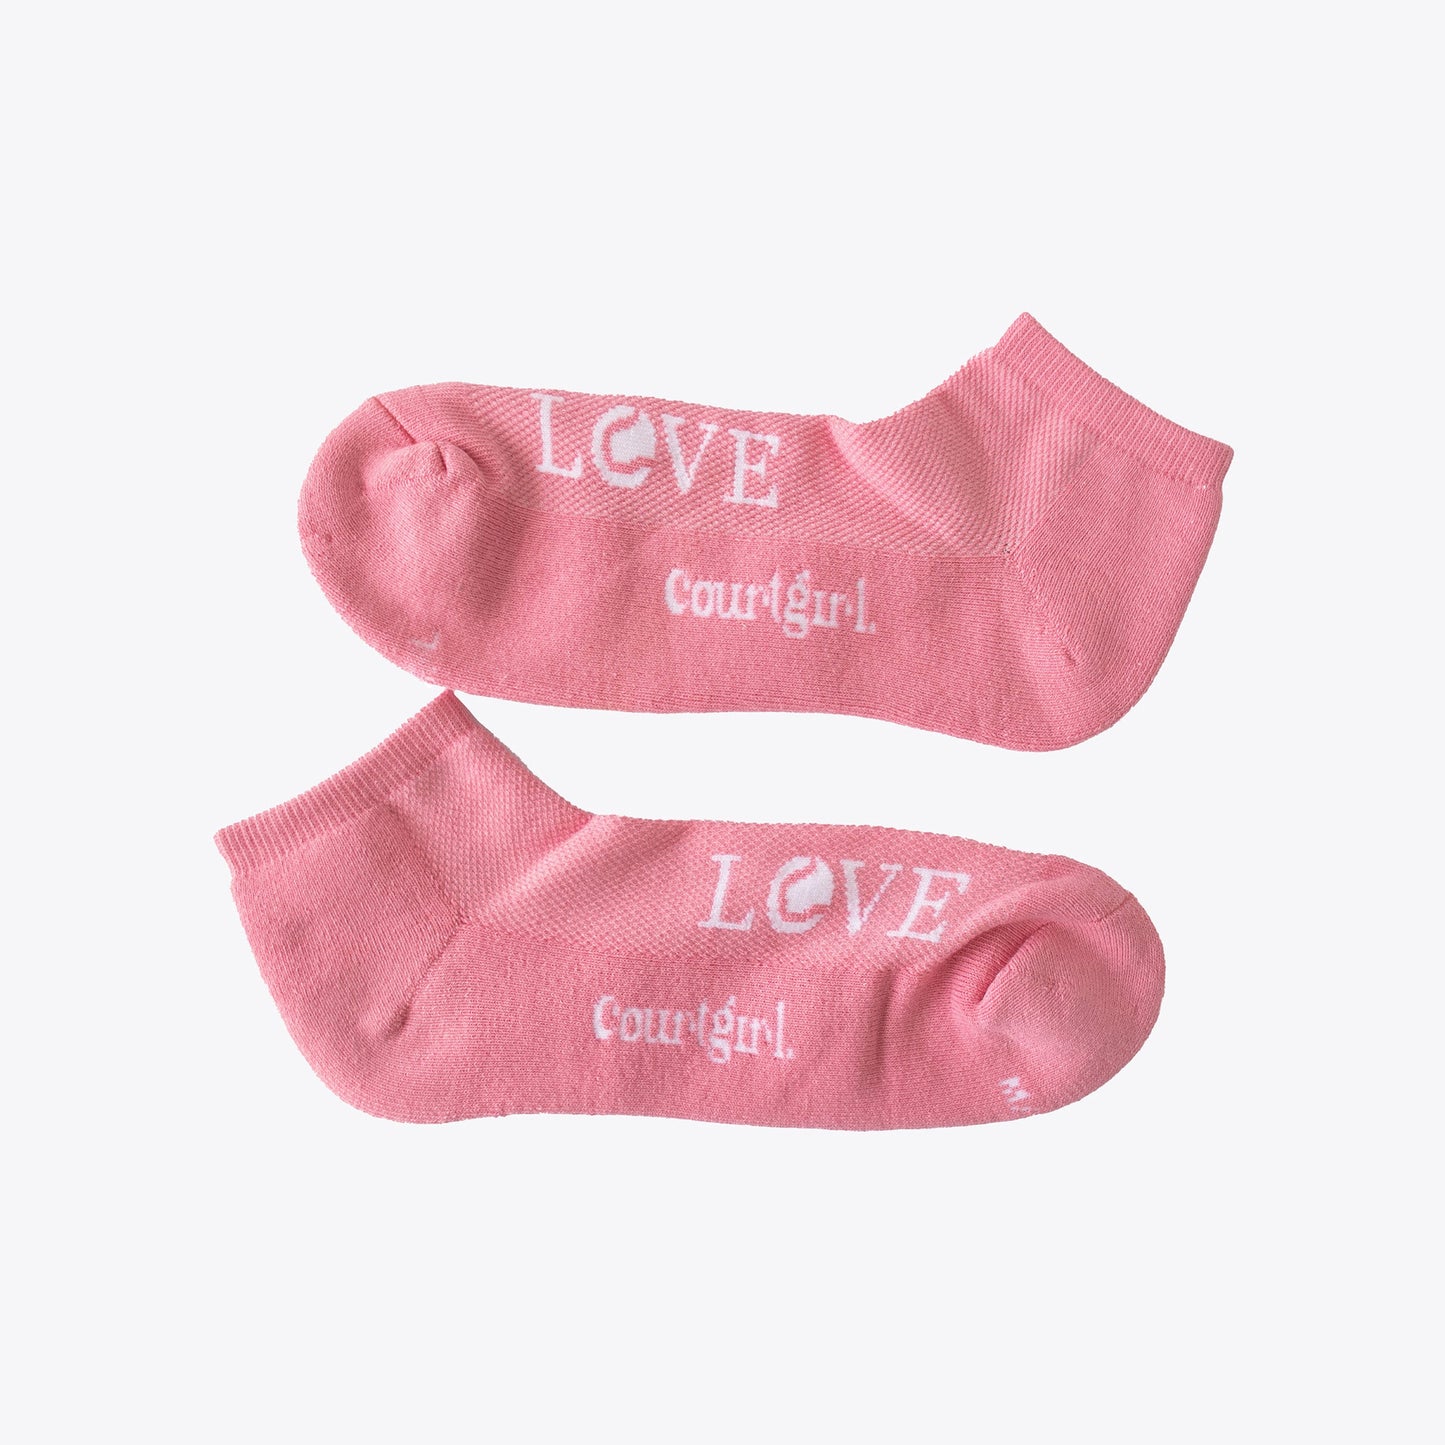 BOGO LOVE Sock Valentine